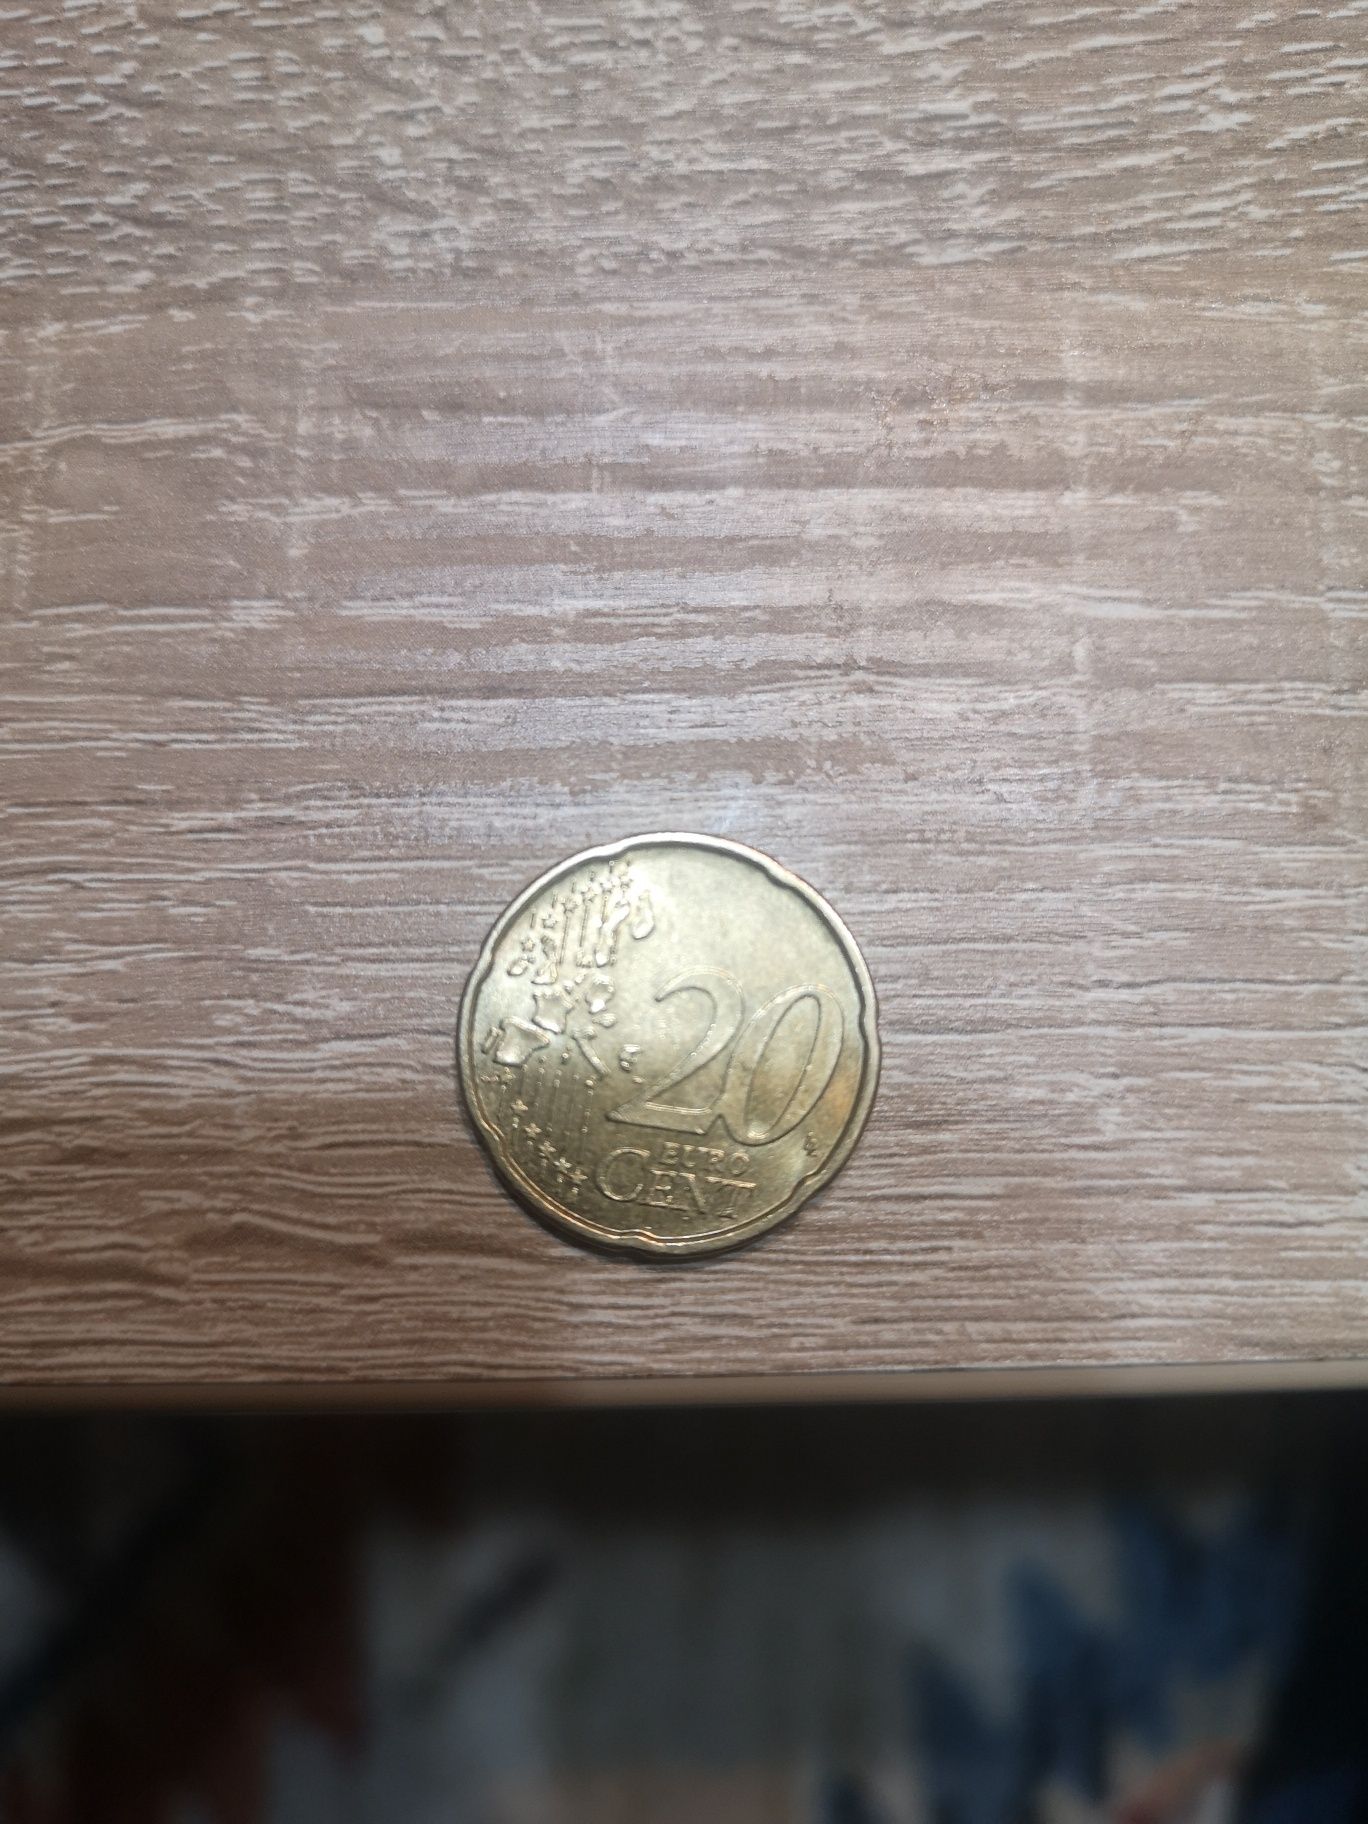 Mondeda de 20 euro centi din anul 2002